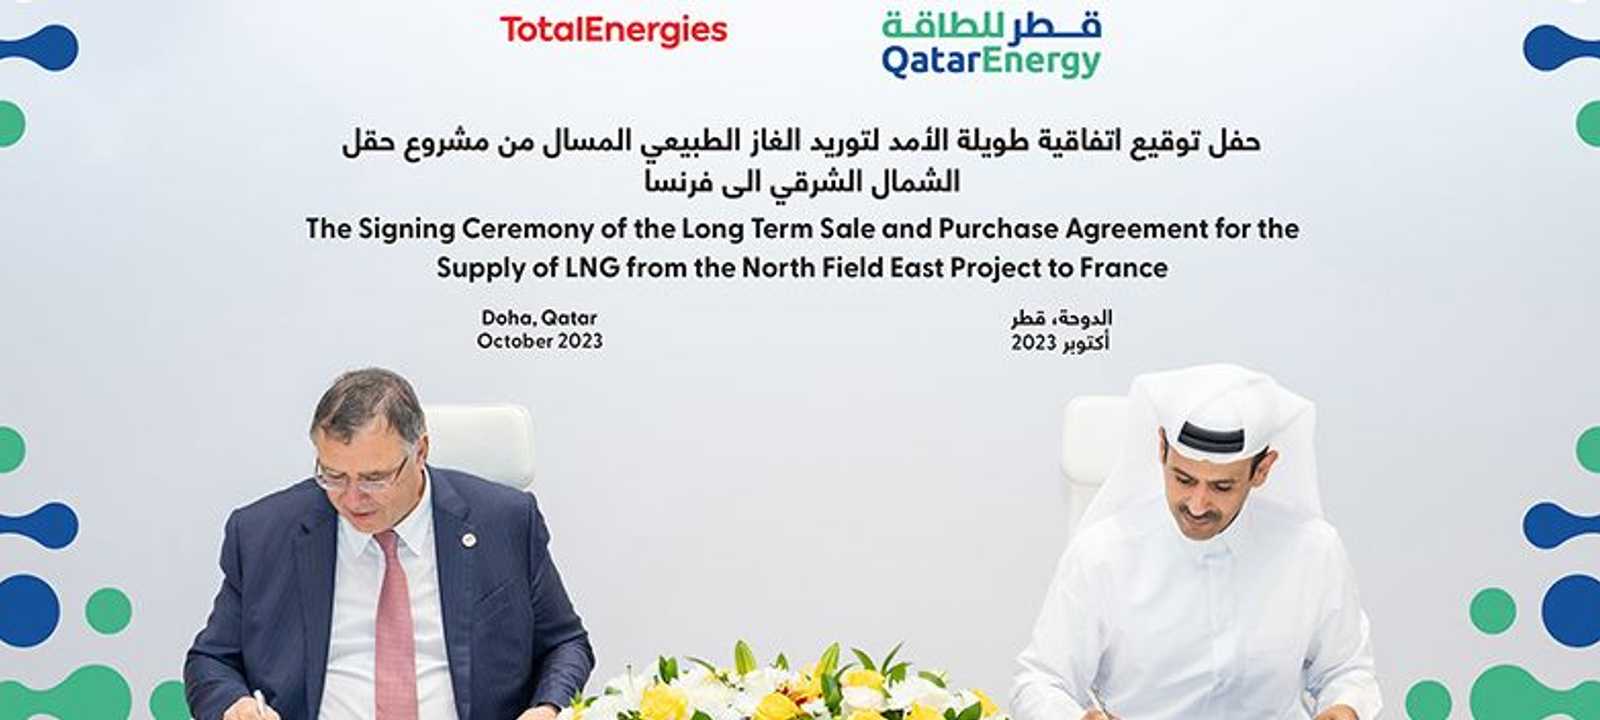 توقيع الاتفاقية بين قطر للطاقة وتوتال إنرجيز